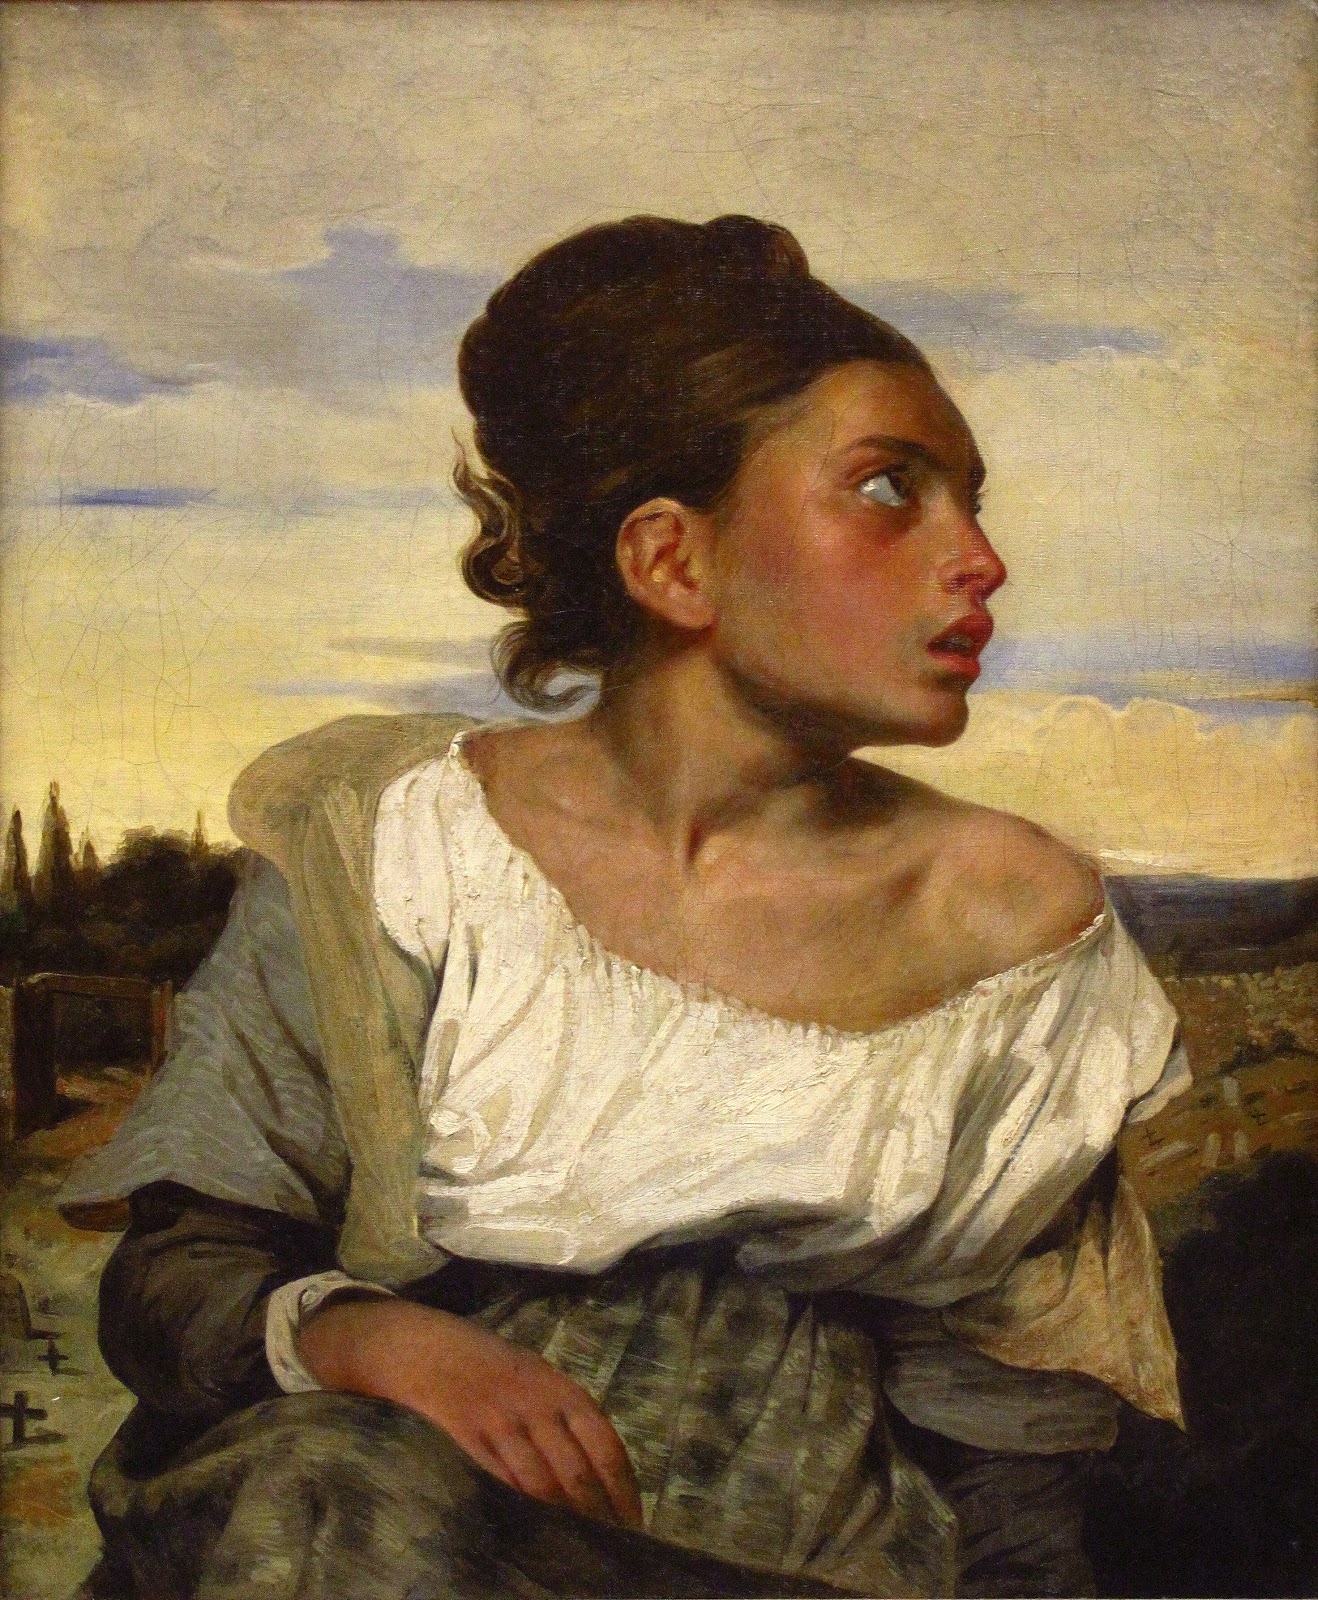 Eugene+Delacroix-1798-1863 (179).jpg